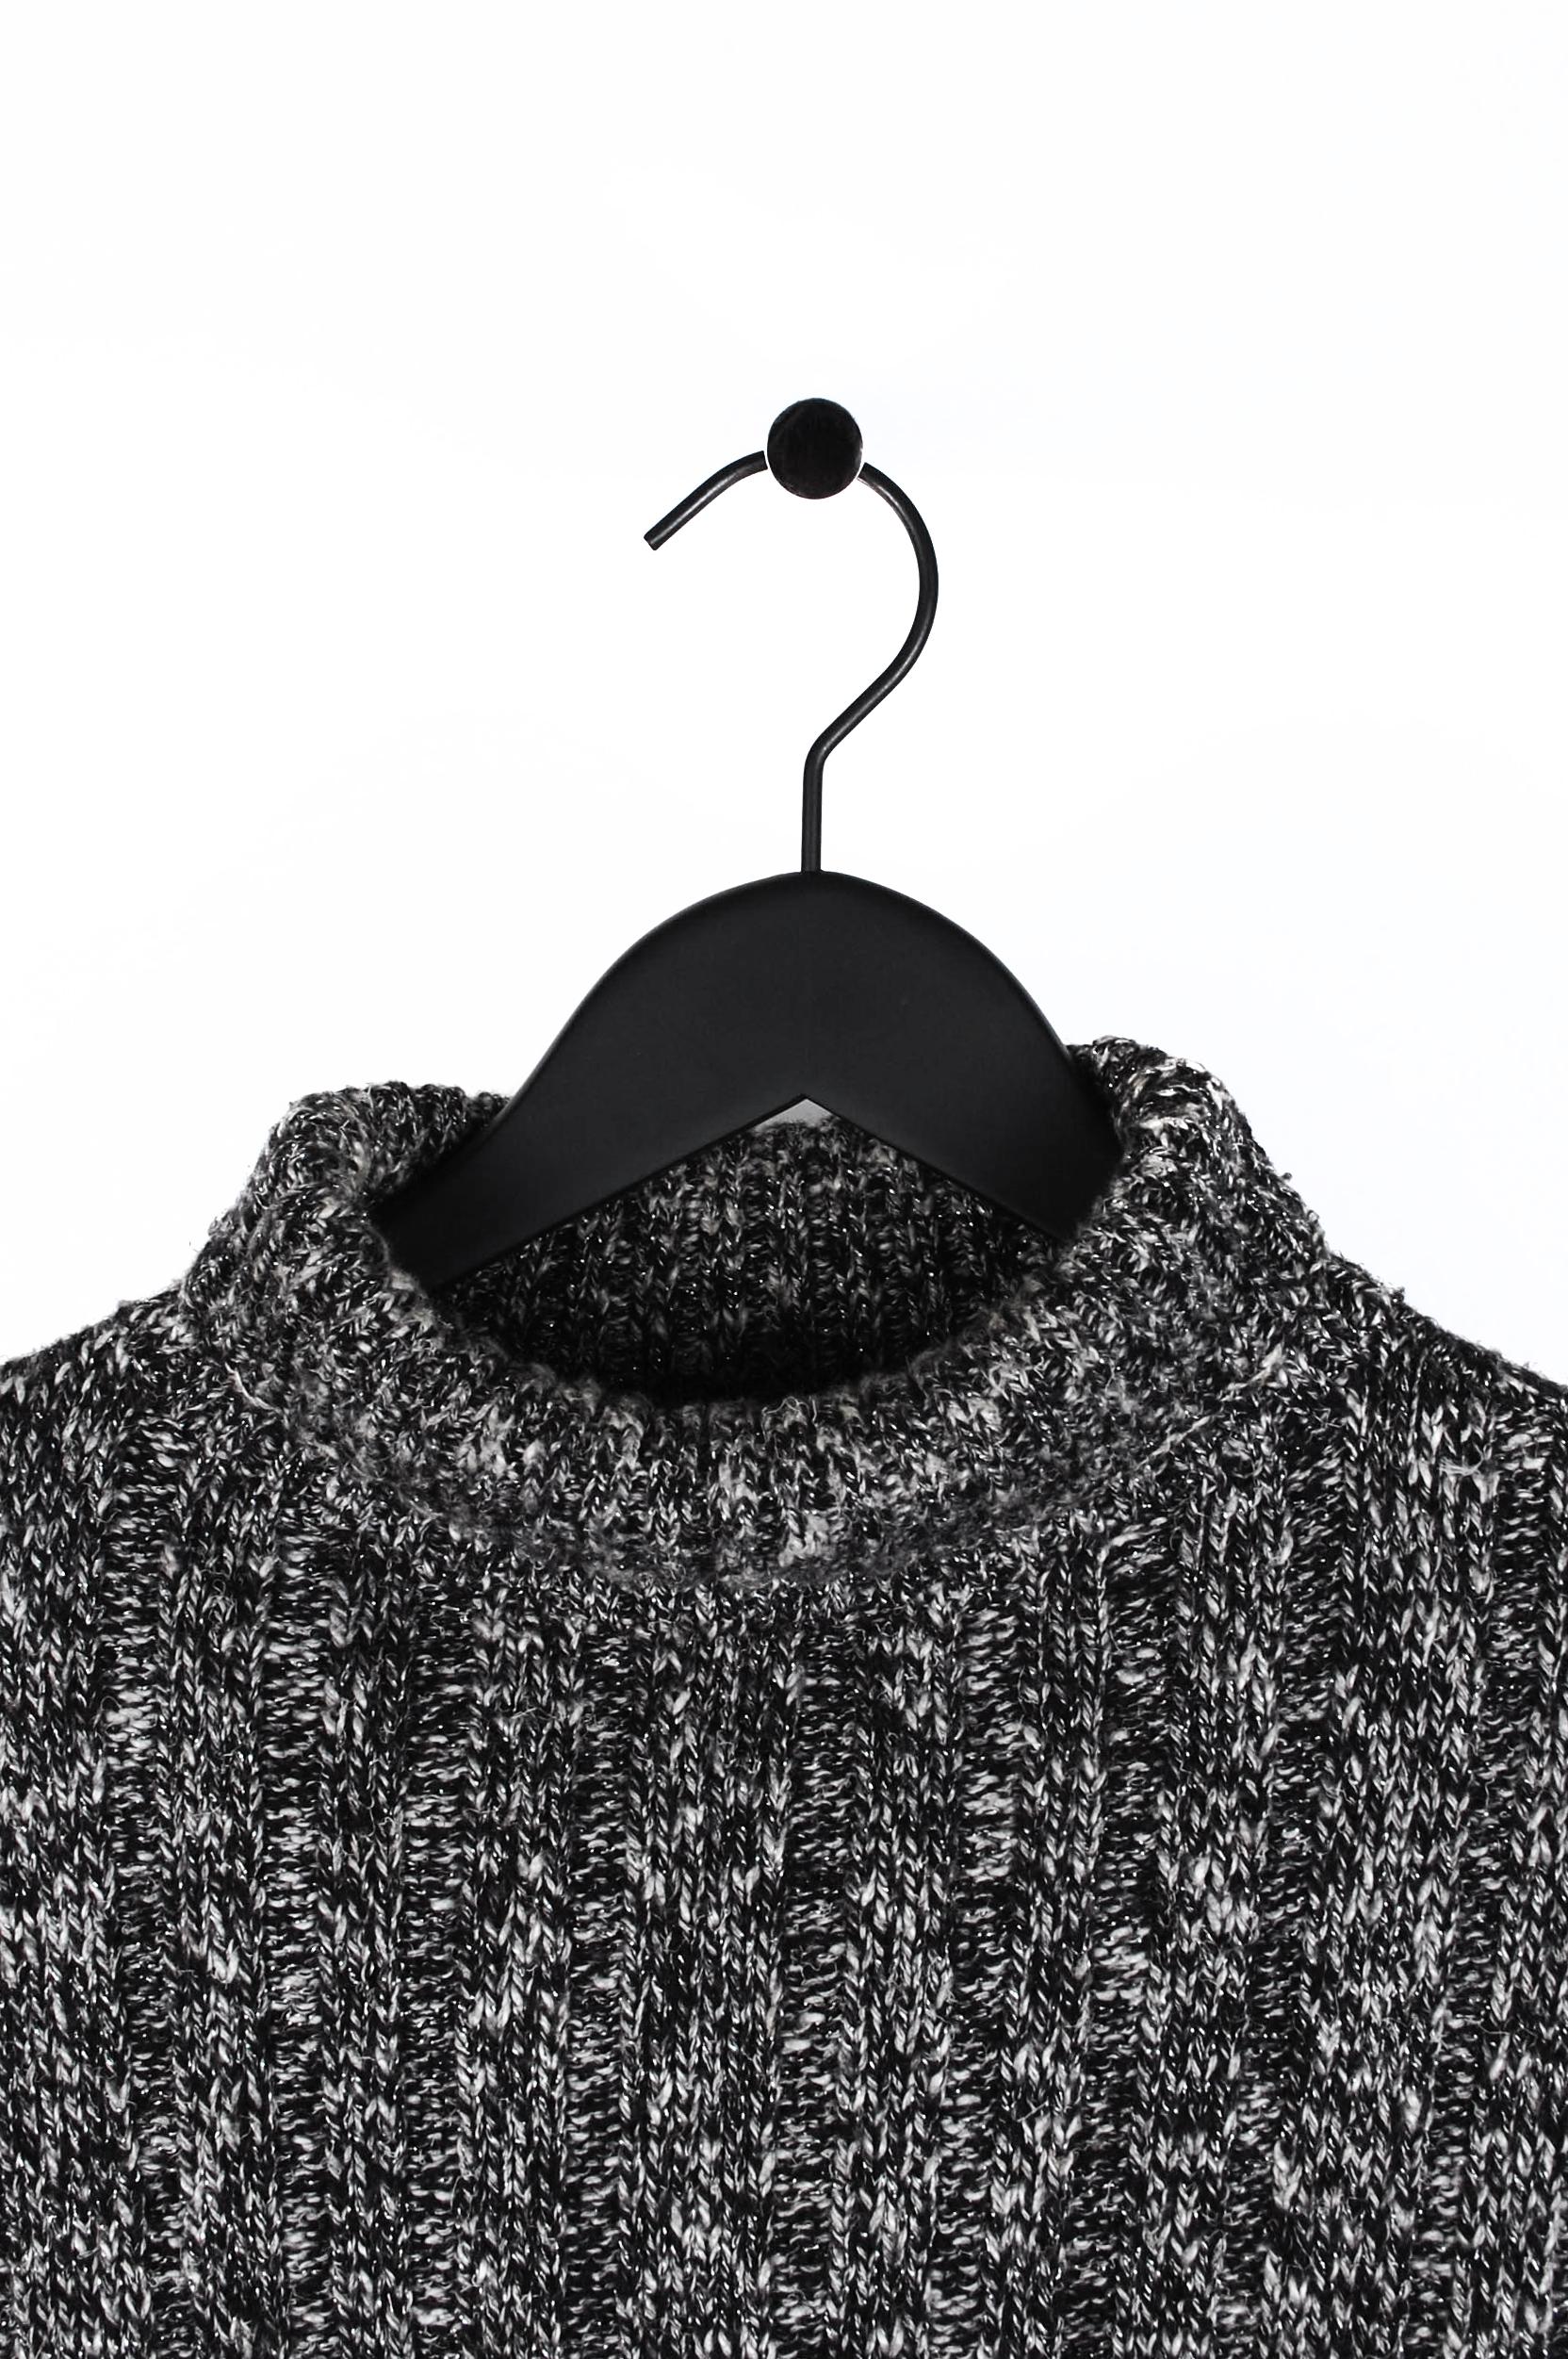 L'article en vente est 100% authentique Dolce&Gabbana Vintage Turtle Neck Men Sweater.
Couleur : Gris mais avec un très bel aspect argenté brillant.
(La couleur réelle peut varier légèrement en raison de l'interprétation individuelle de l'écran de